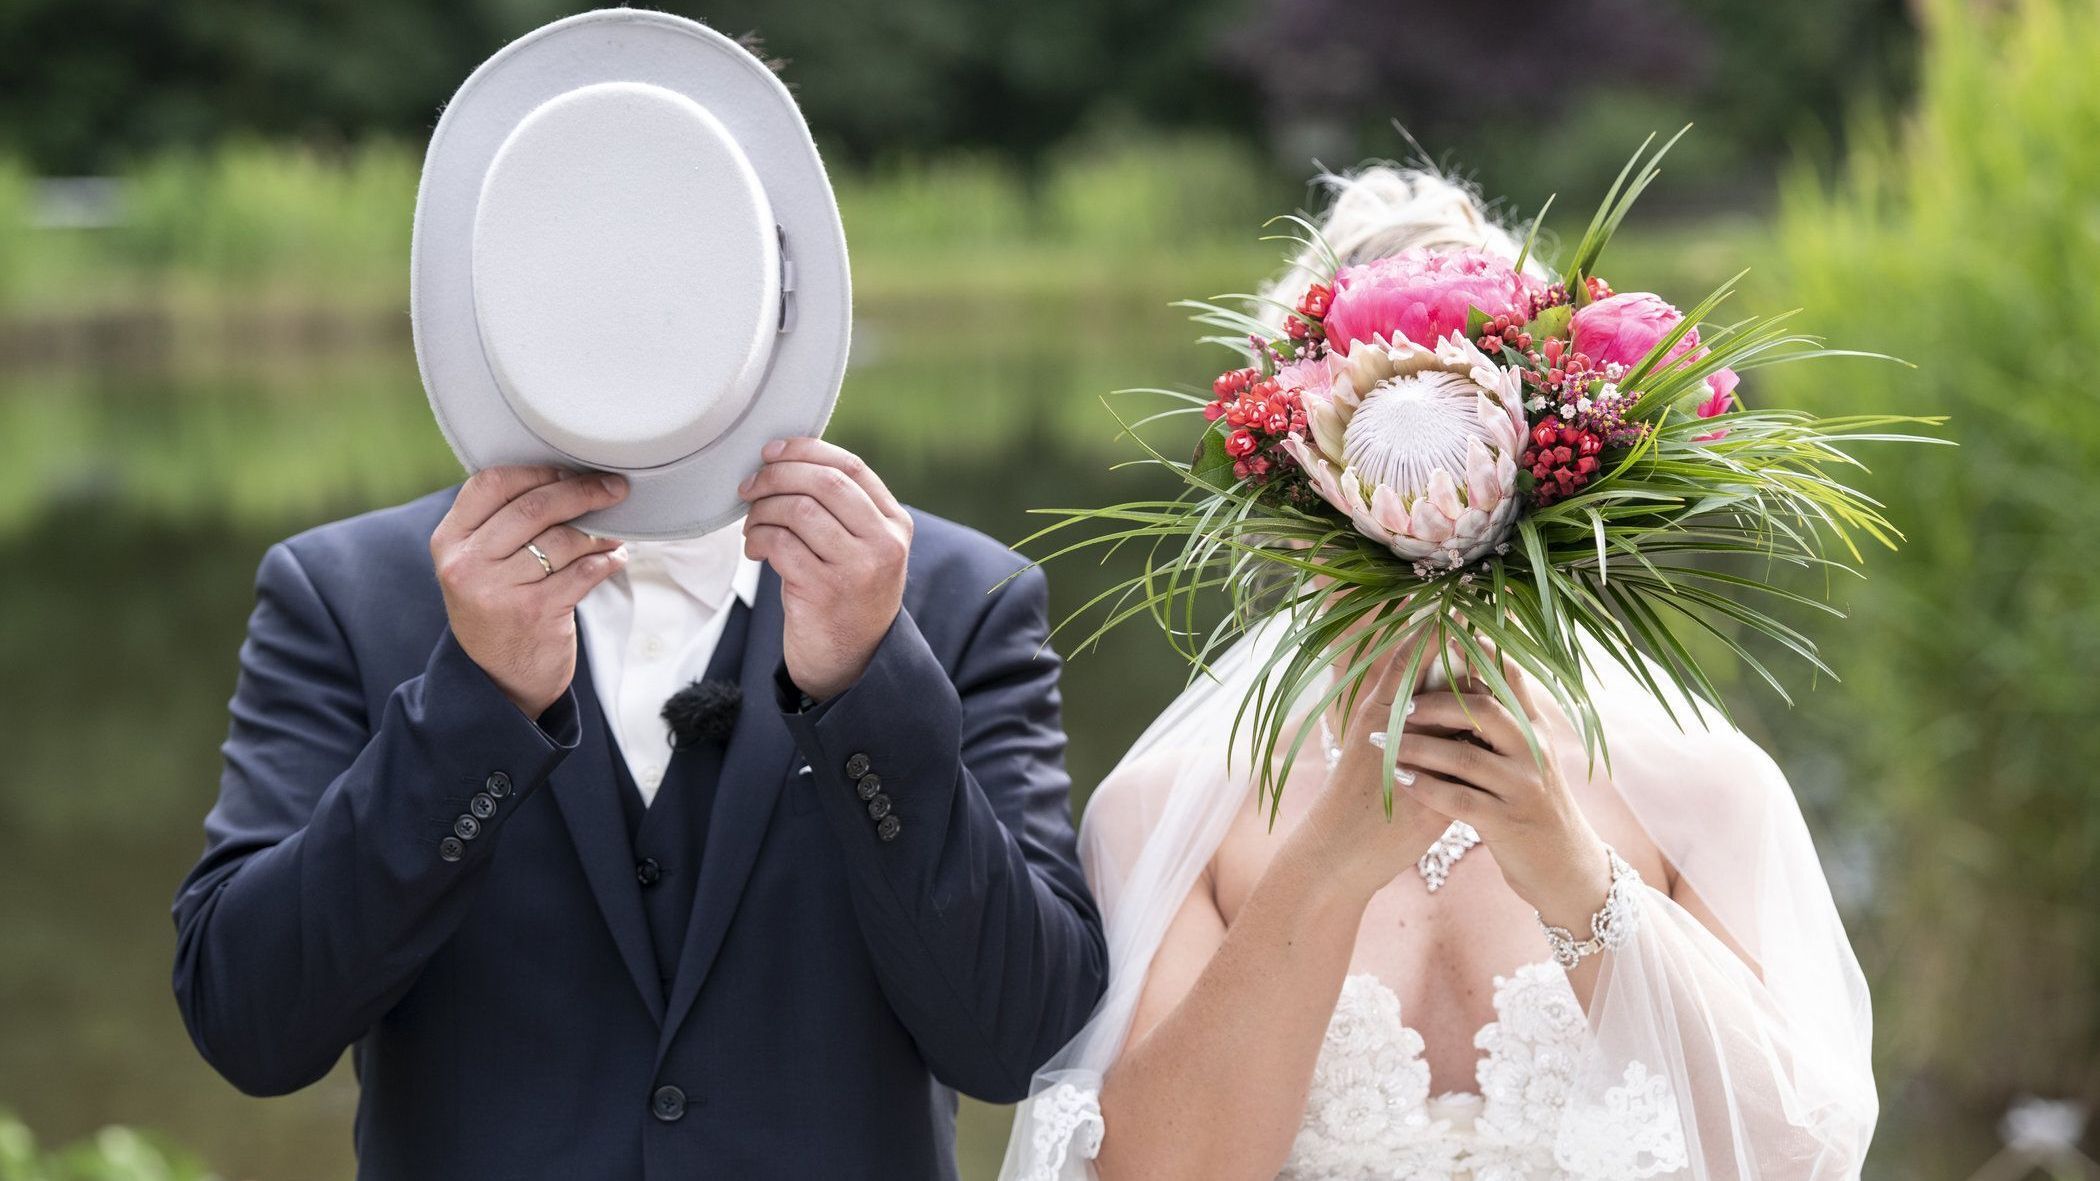 "Hochzeit auf den ersten Blick" 2020: Die neuen Paare im Überblick  